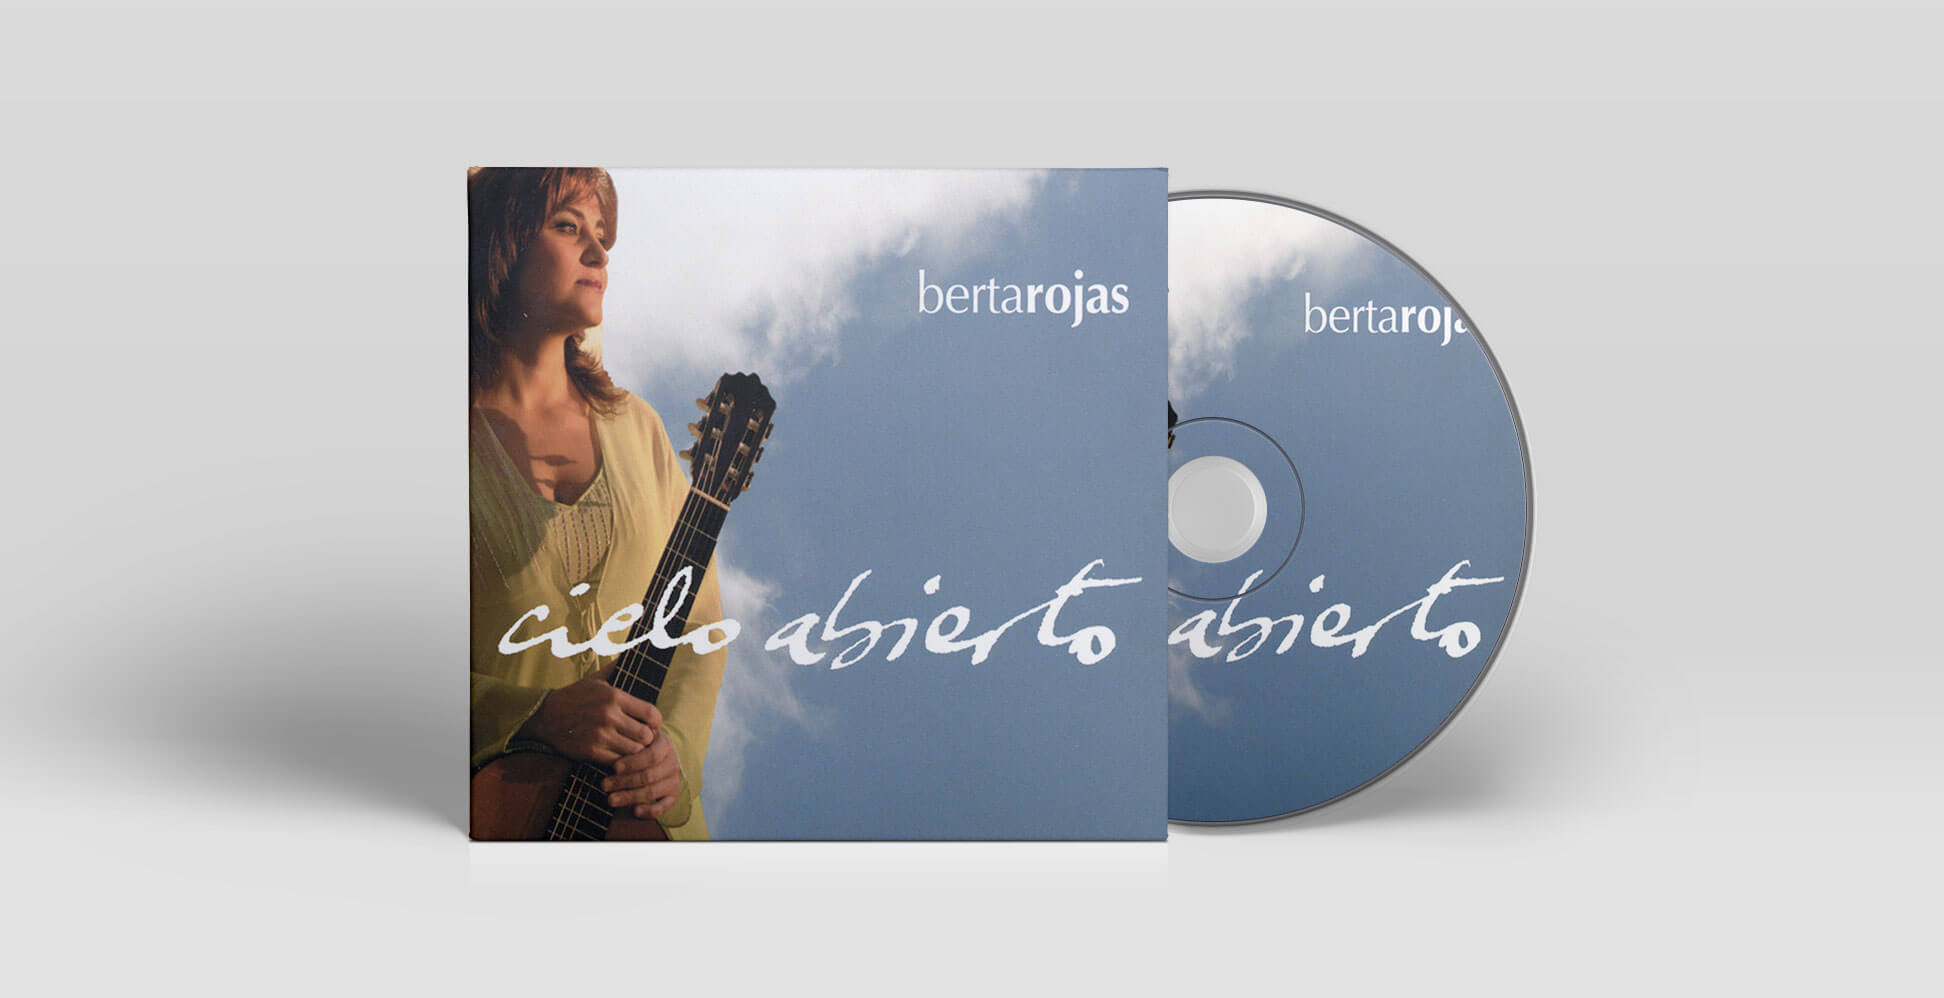 Berta Rojas - Cielo Abierto